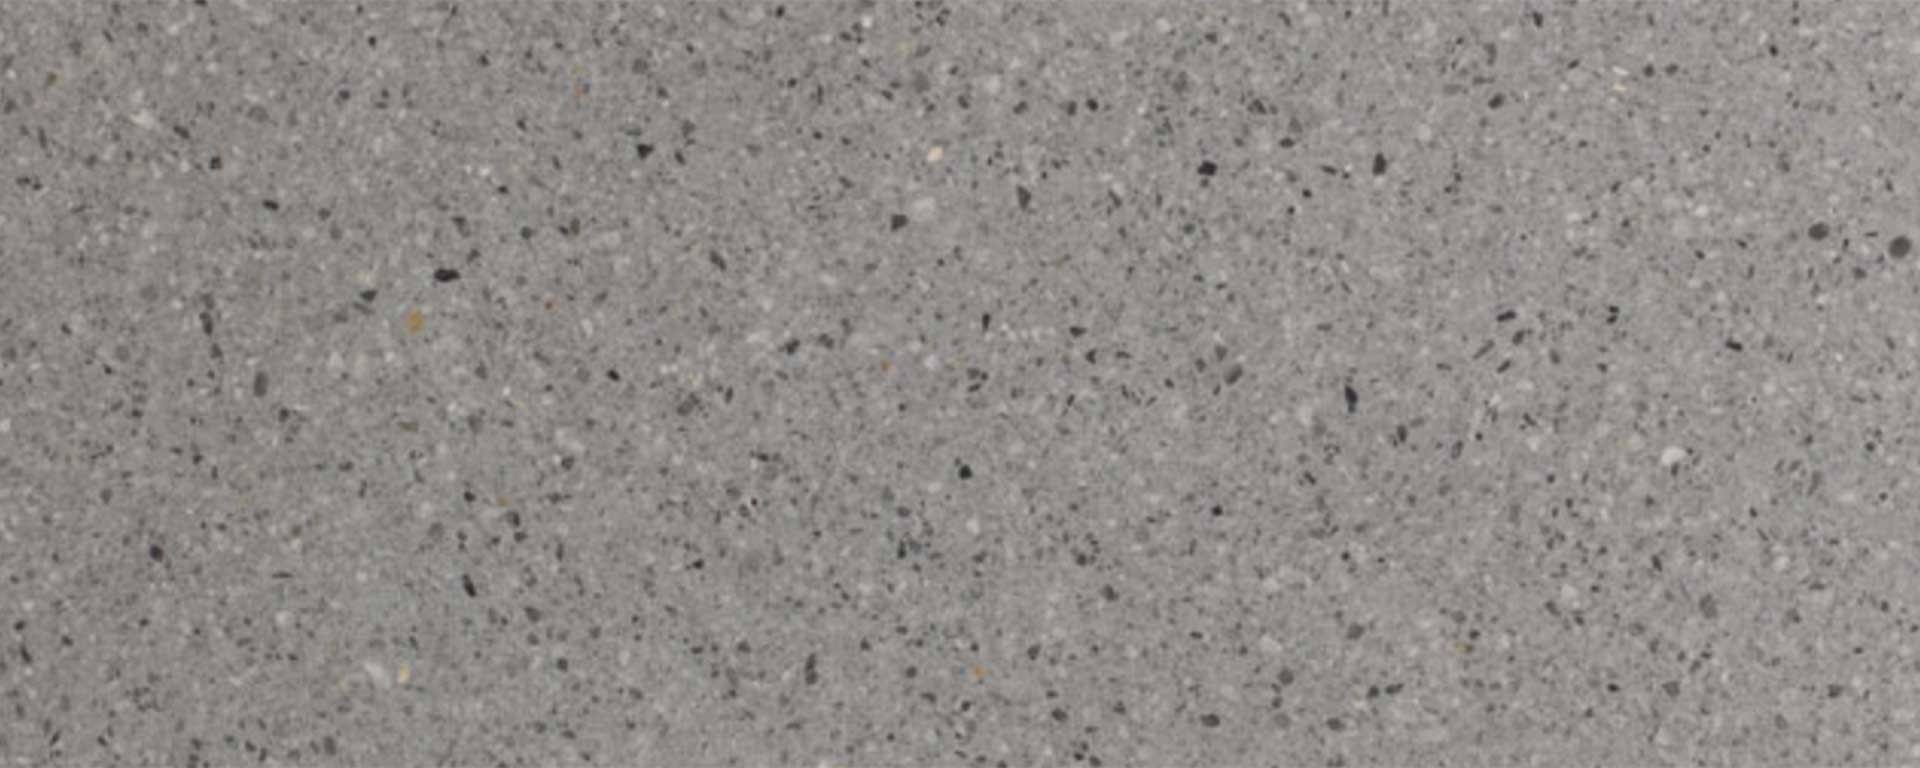 MMDA-005-terrazzo-marmo-cemento